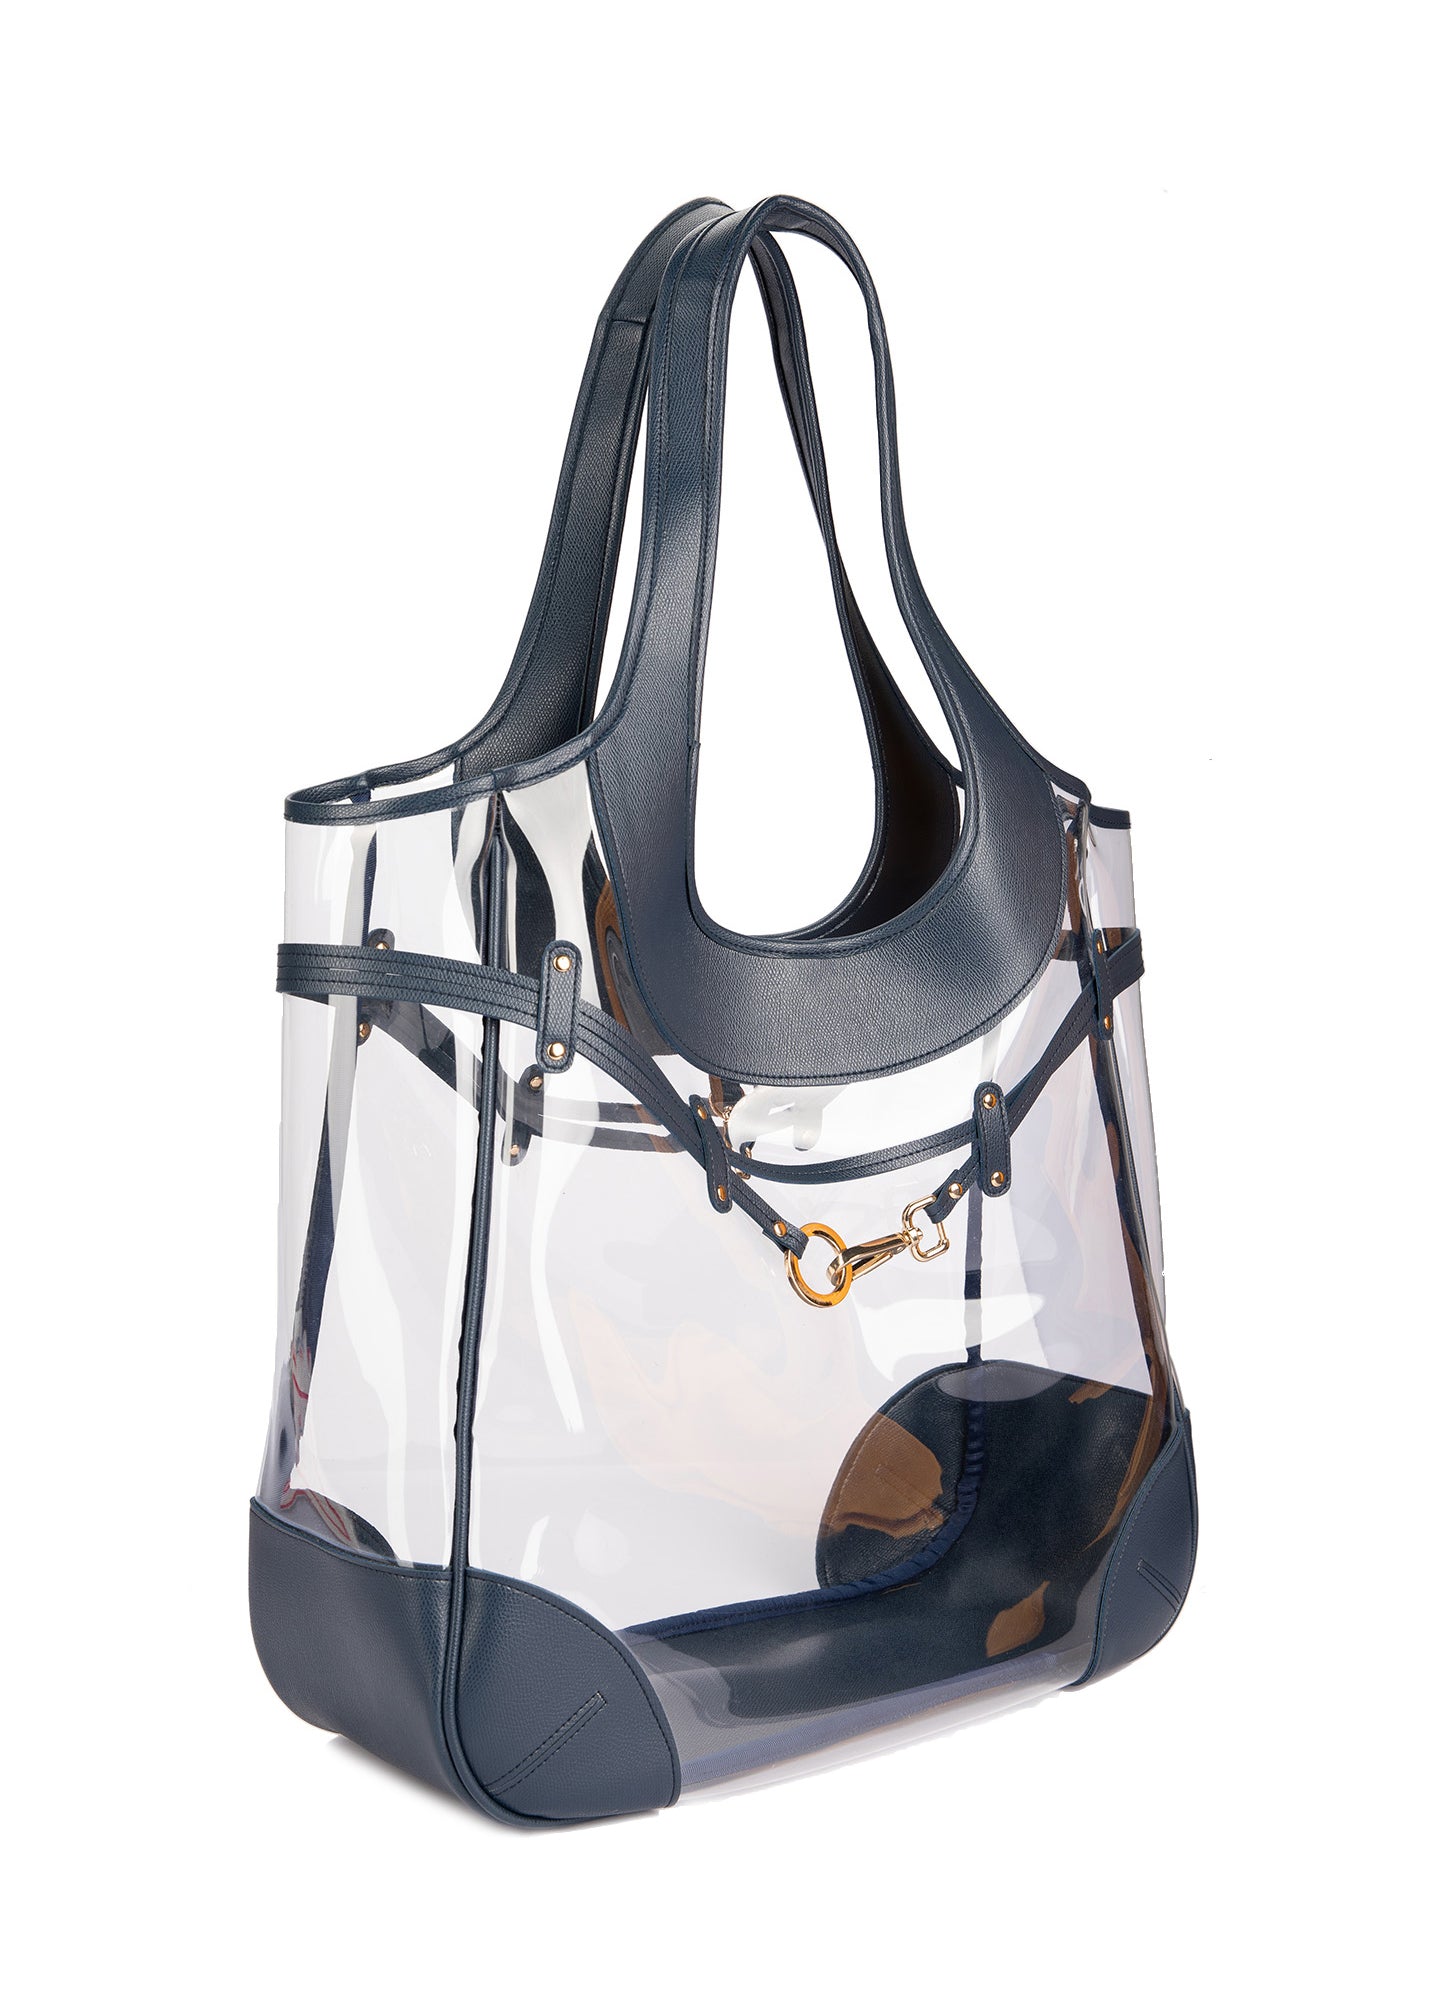 Luna tote bag (small)